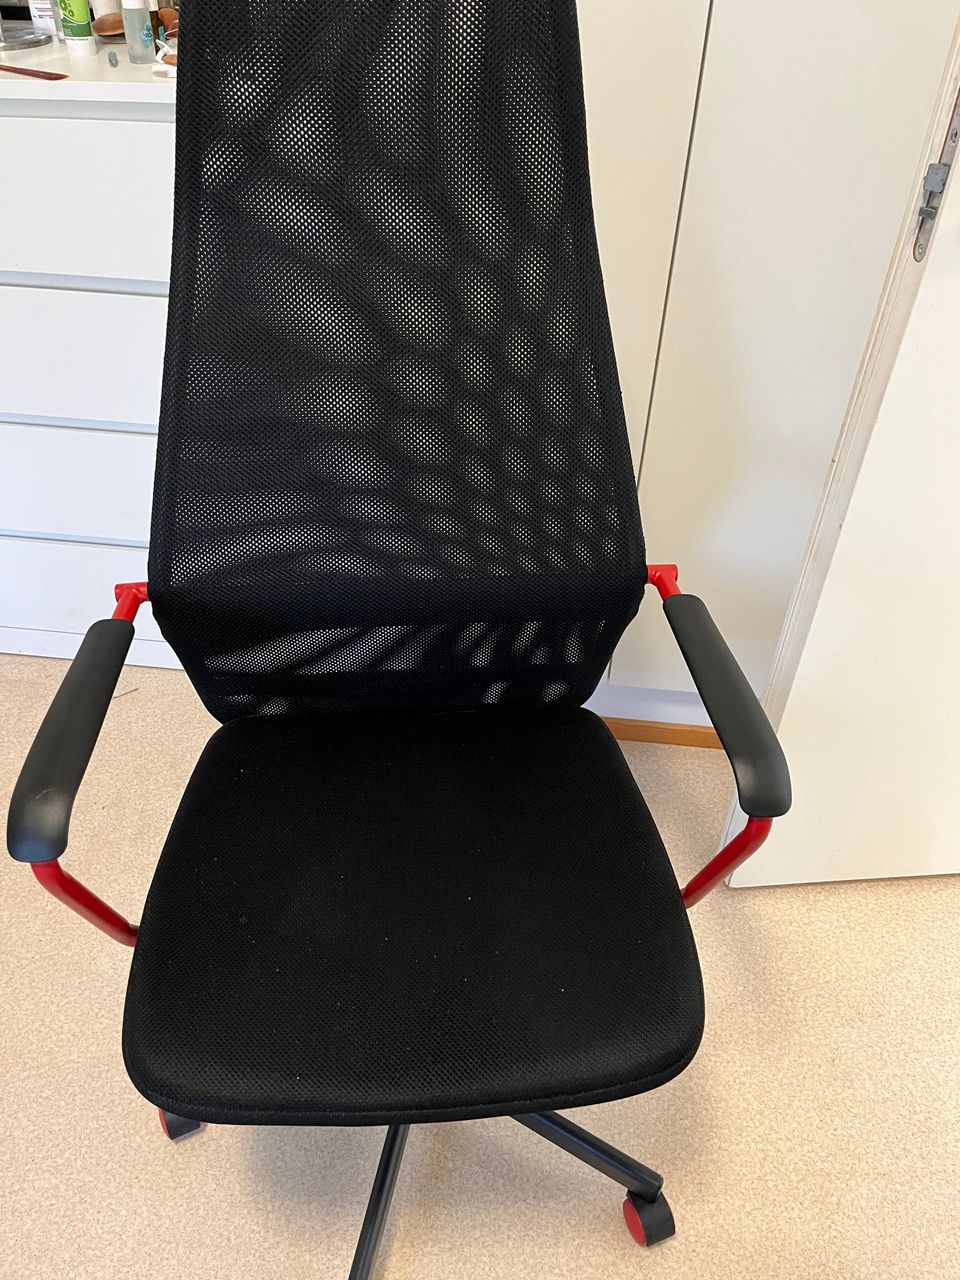 Work chair